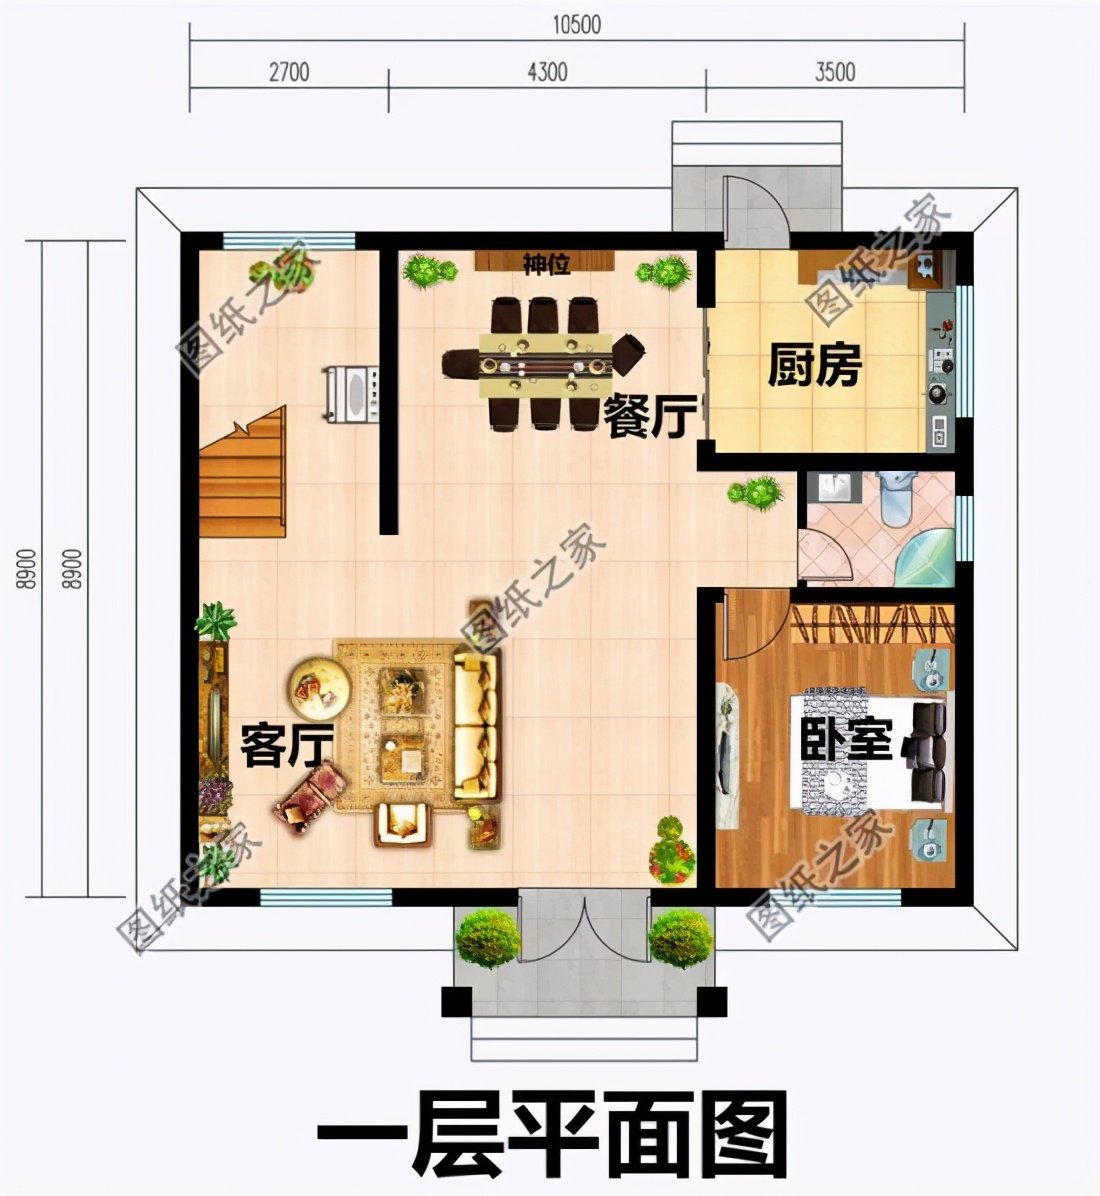 设计功能: 一层户型:客厅,神位,餐厅,厨房 ,卧室,卫生间; 二层户型